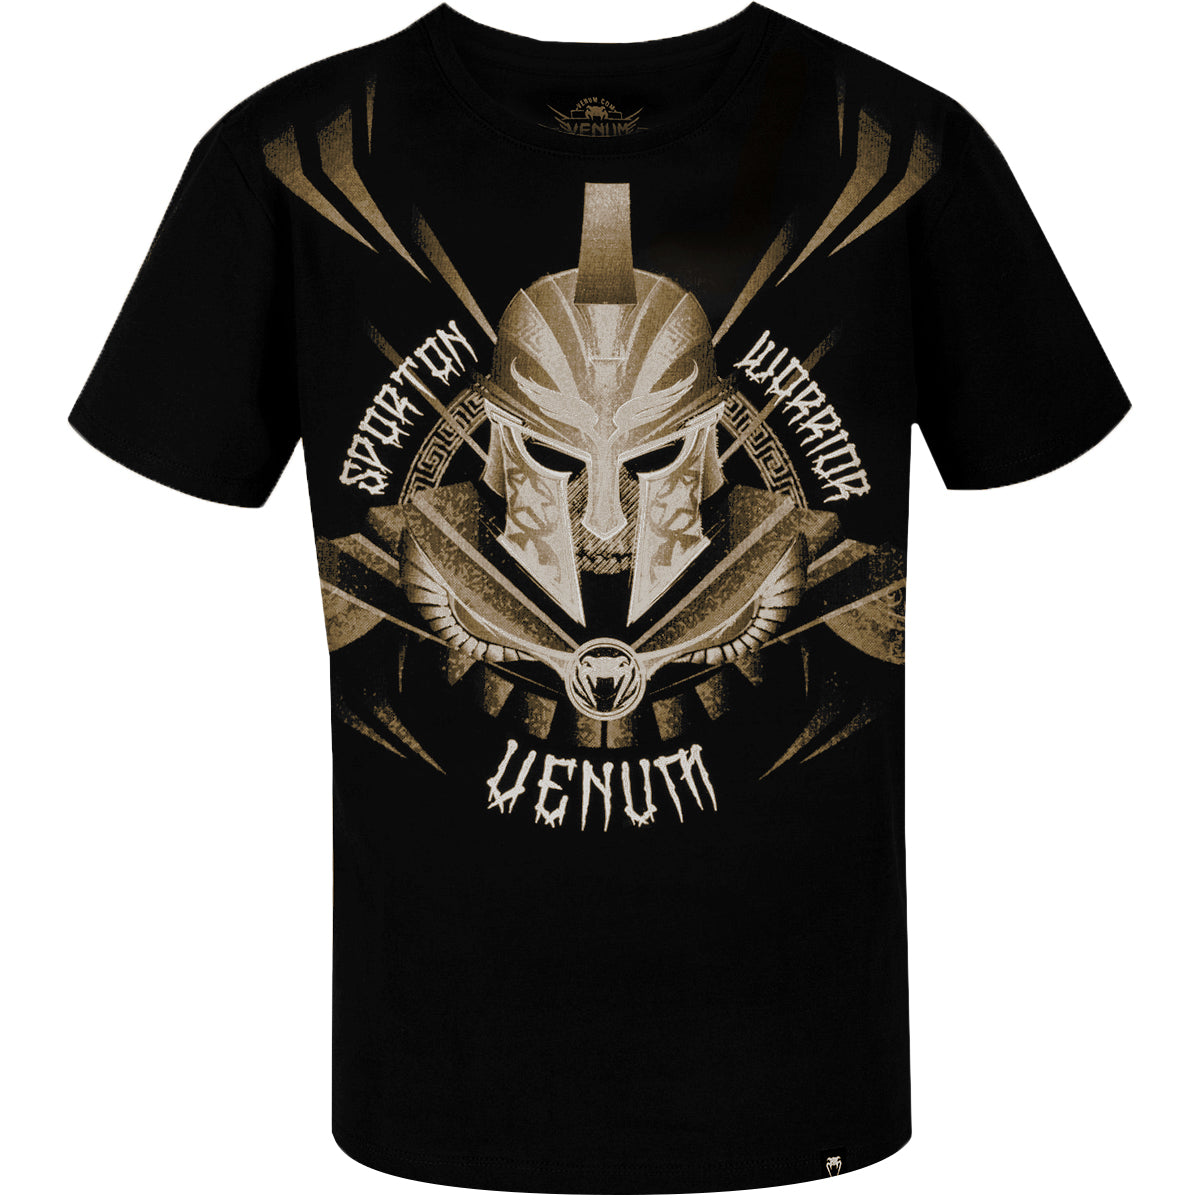 Venum Kids Gladiator Short Sleeve T-Shirt - Black/Black Venum